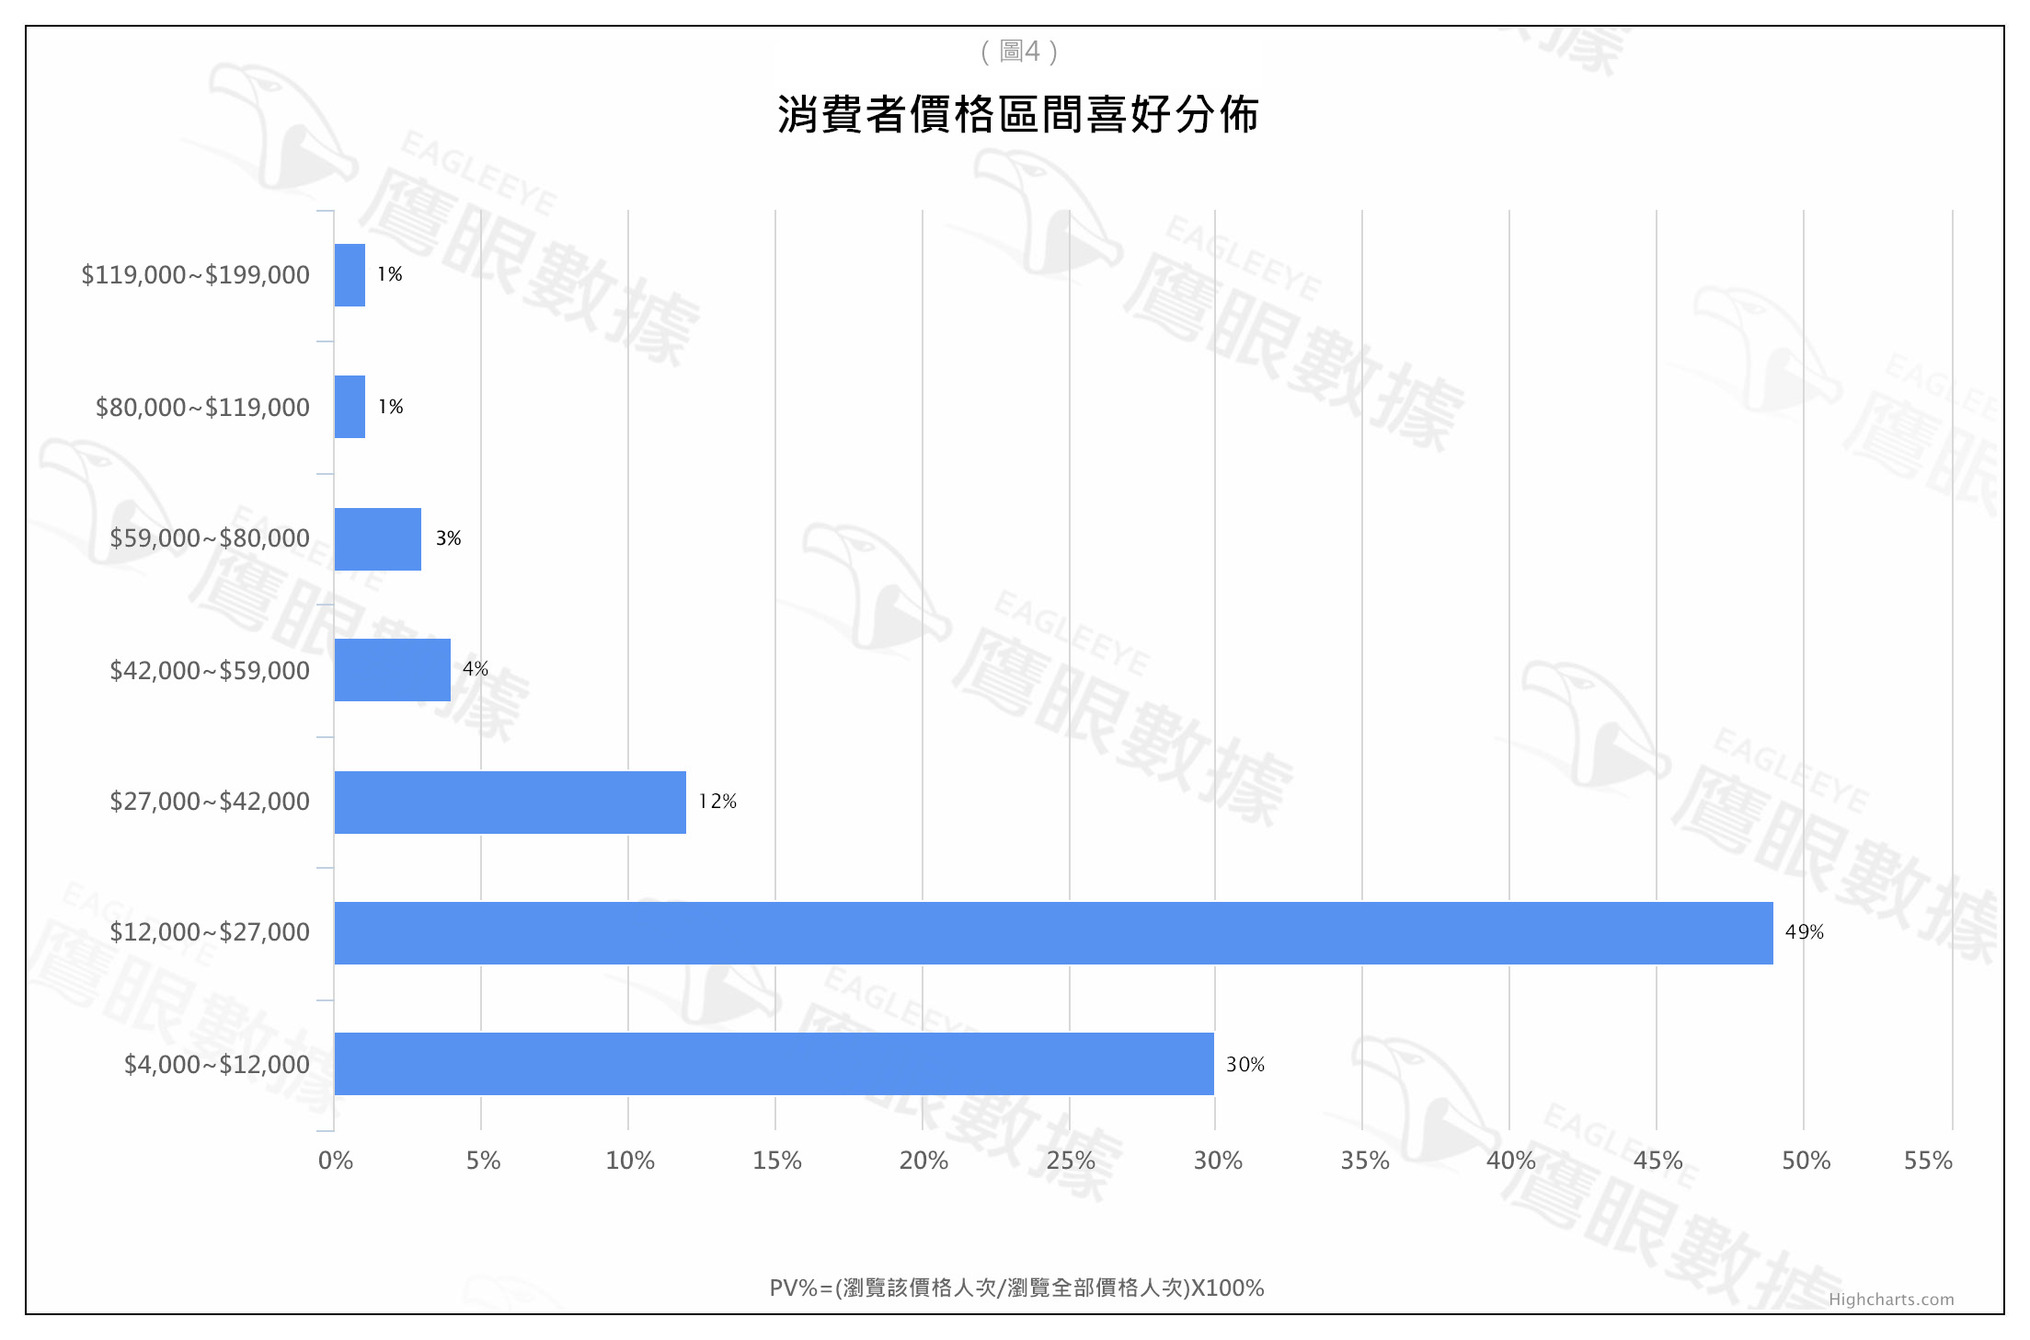 〈2015年7月〉台灣網路消費者對「液晶電視」購買行為與通路品牌分析-EAGLEEYE鷹眼數據